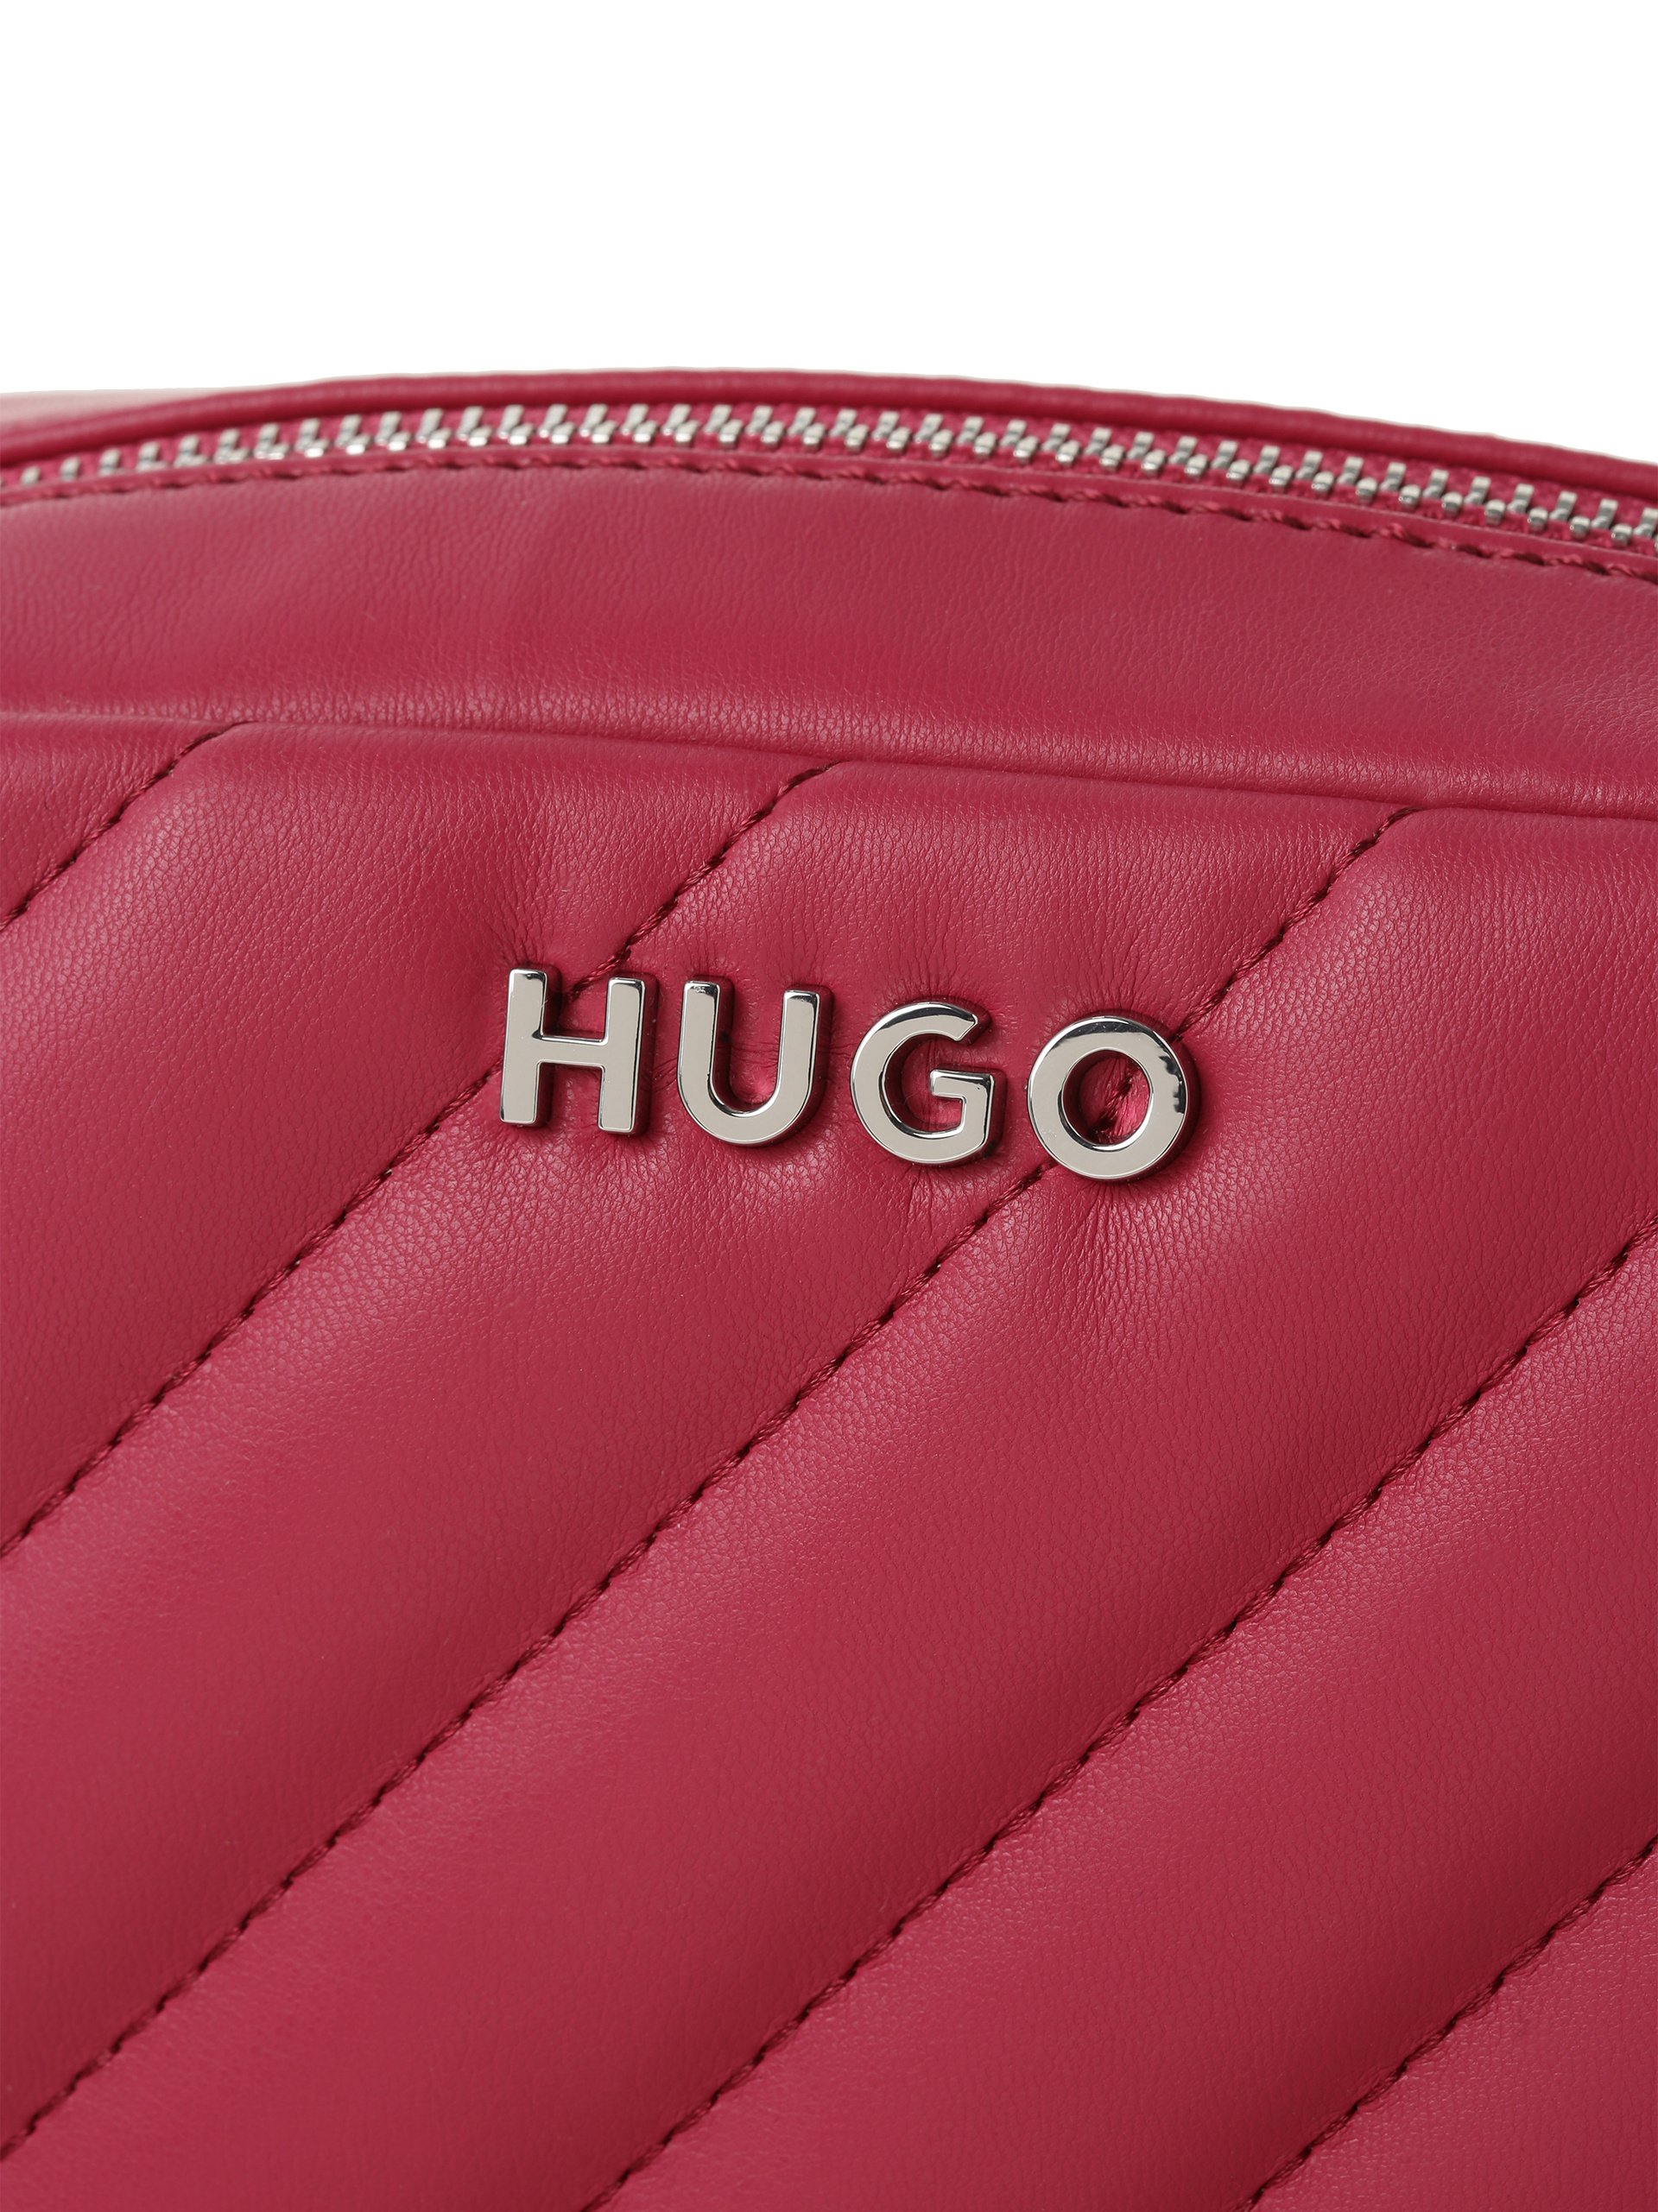 Damen - Lizzie kaufen HUGO Handtasche online